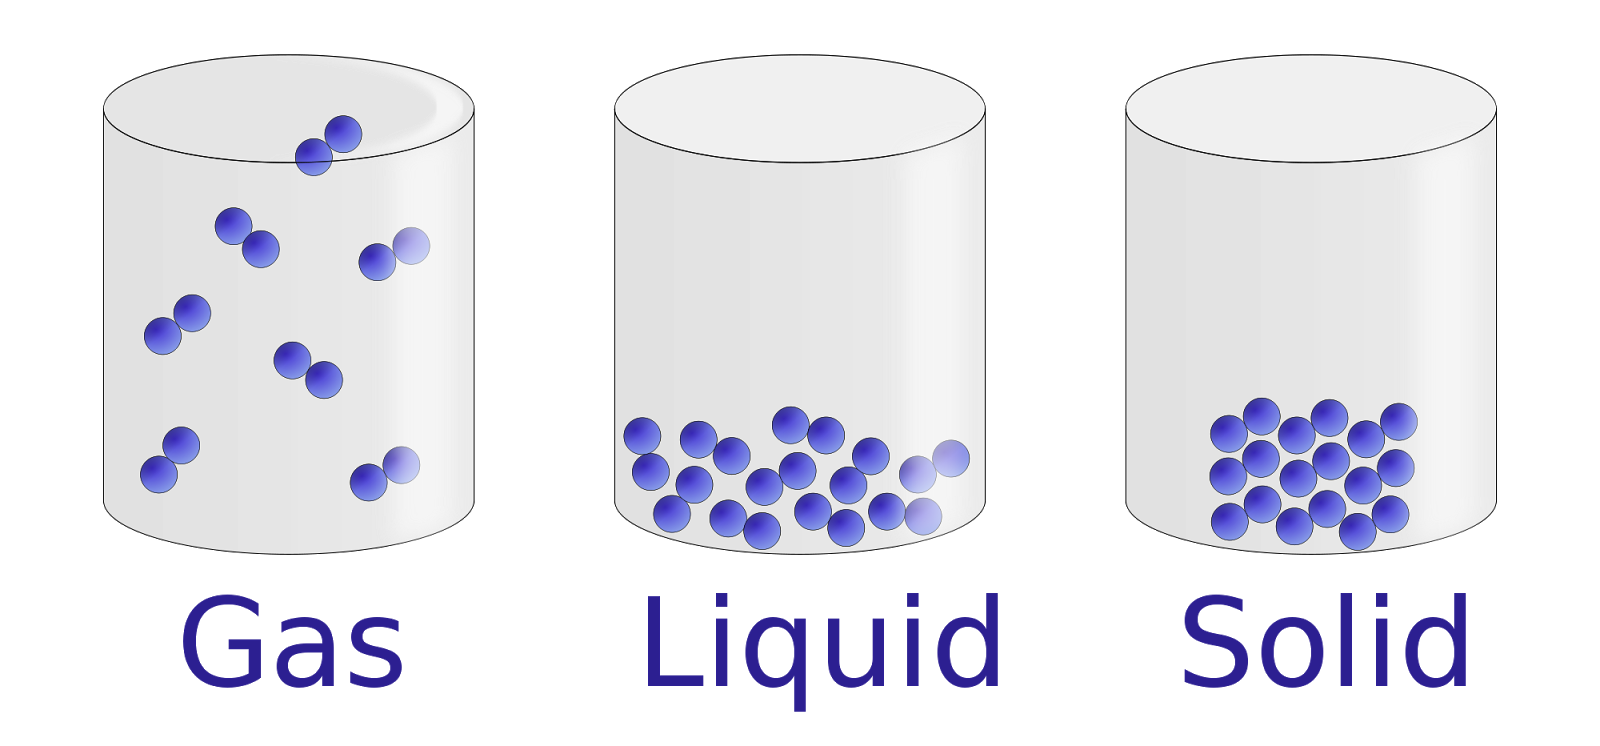 Solido Liquido Y Gas Animado